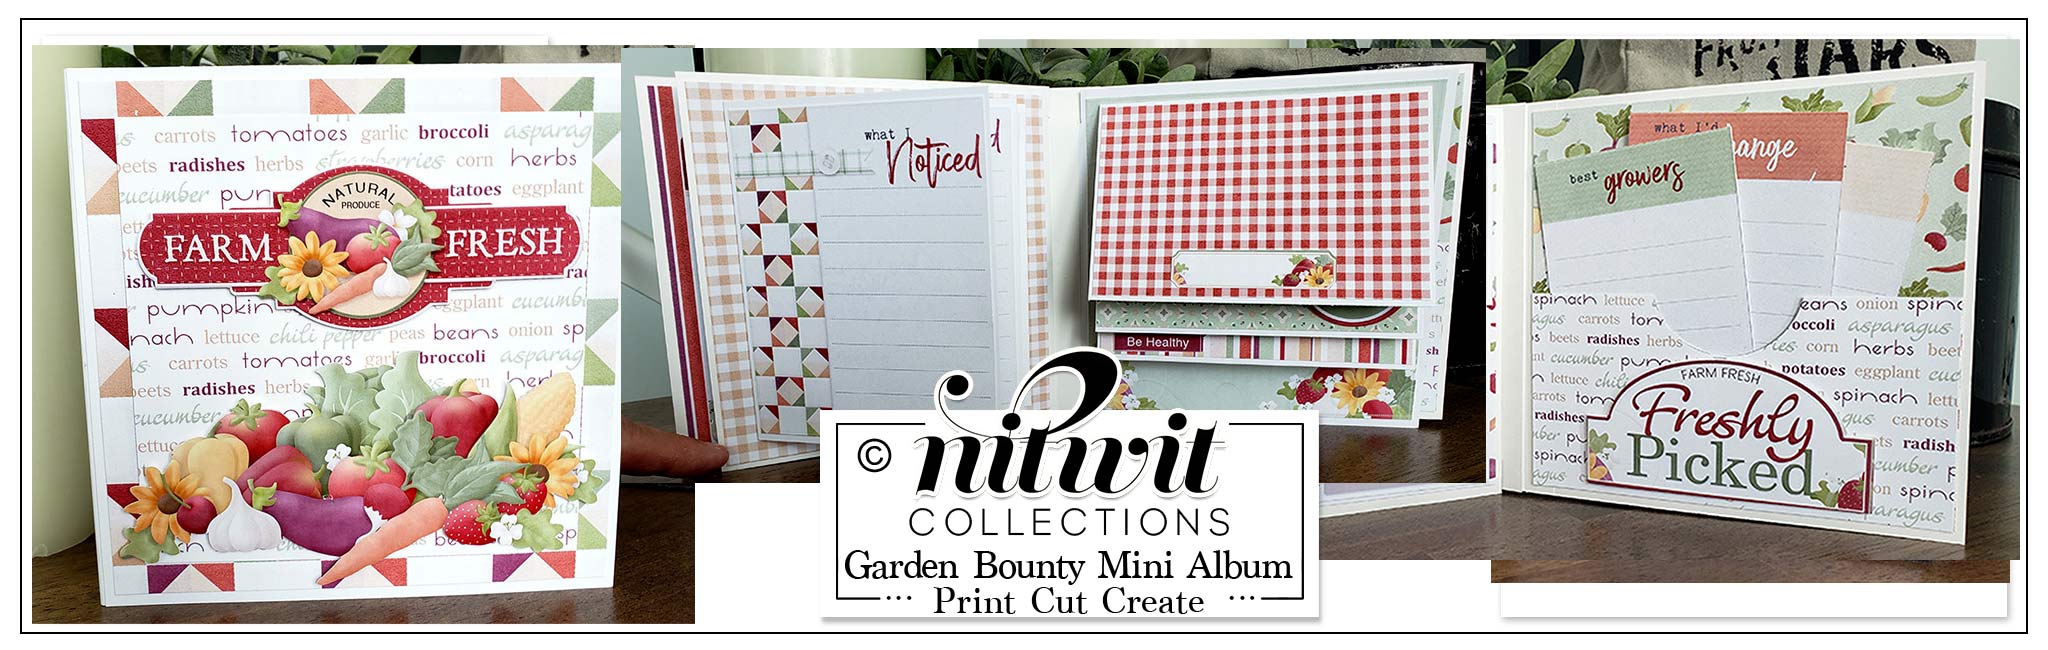 Print Cut Create - Garden Bounty Mini Album Journal